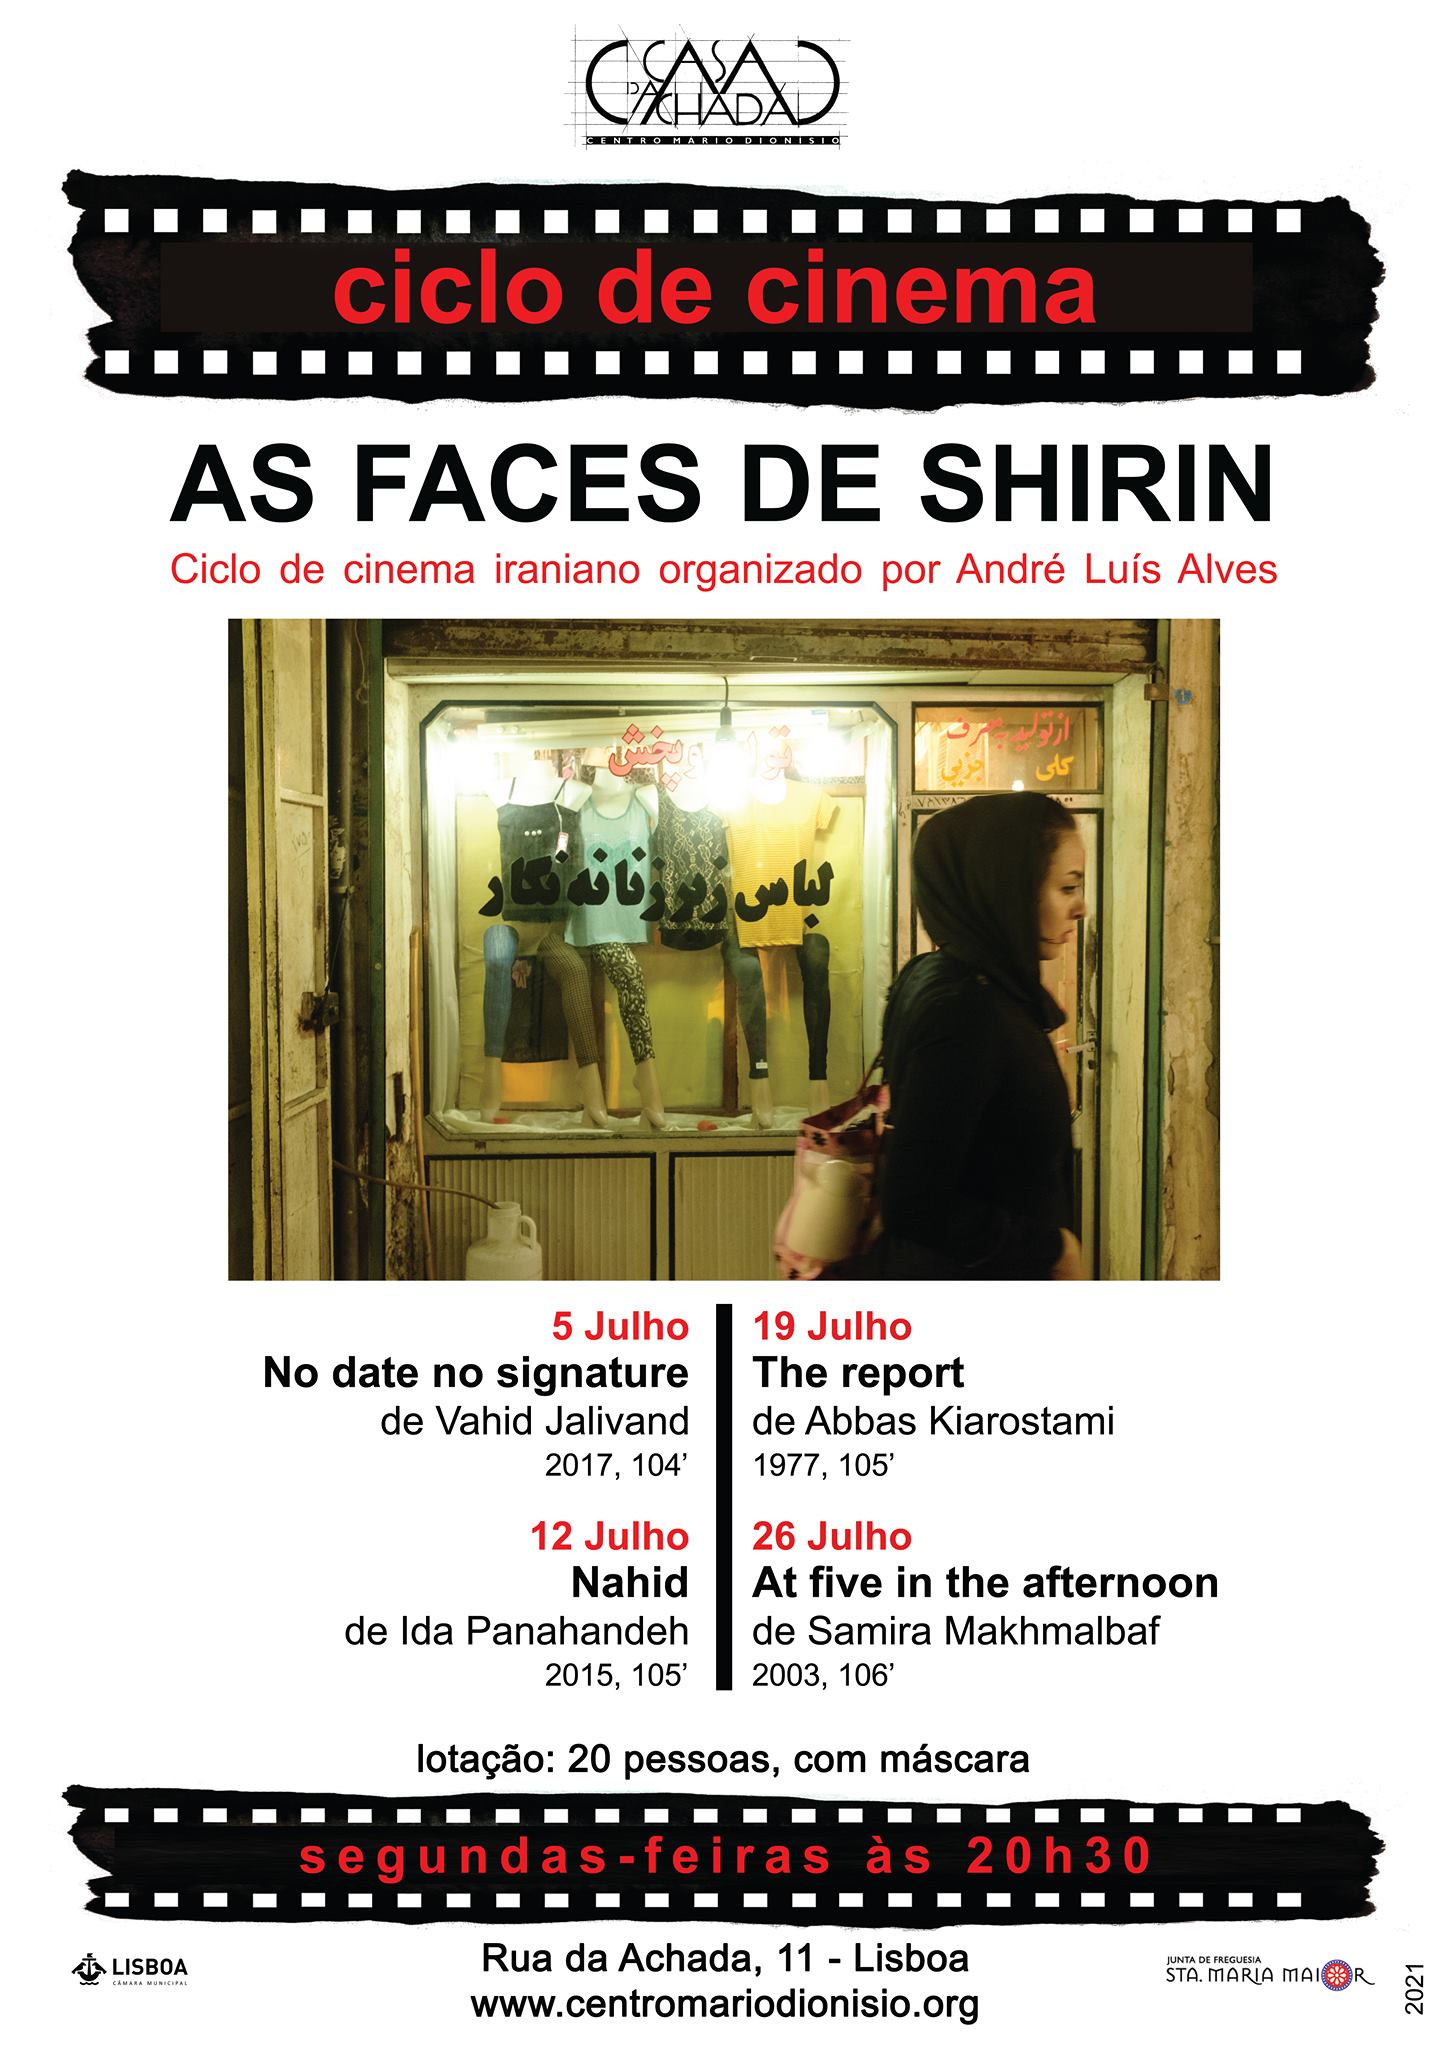 Ciclo de cinema iraniano: As faces de Shirin